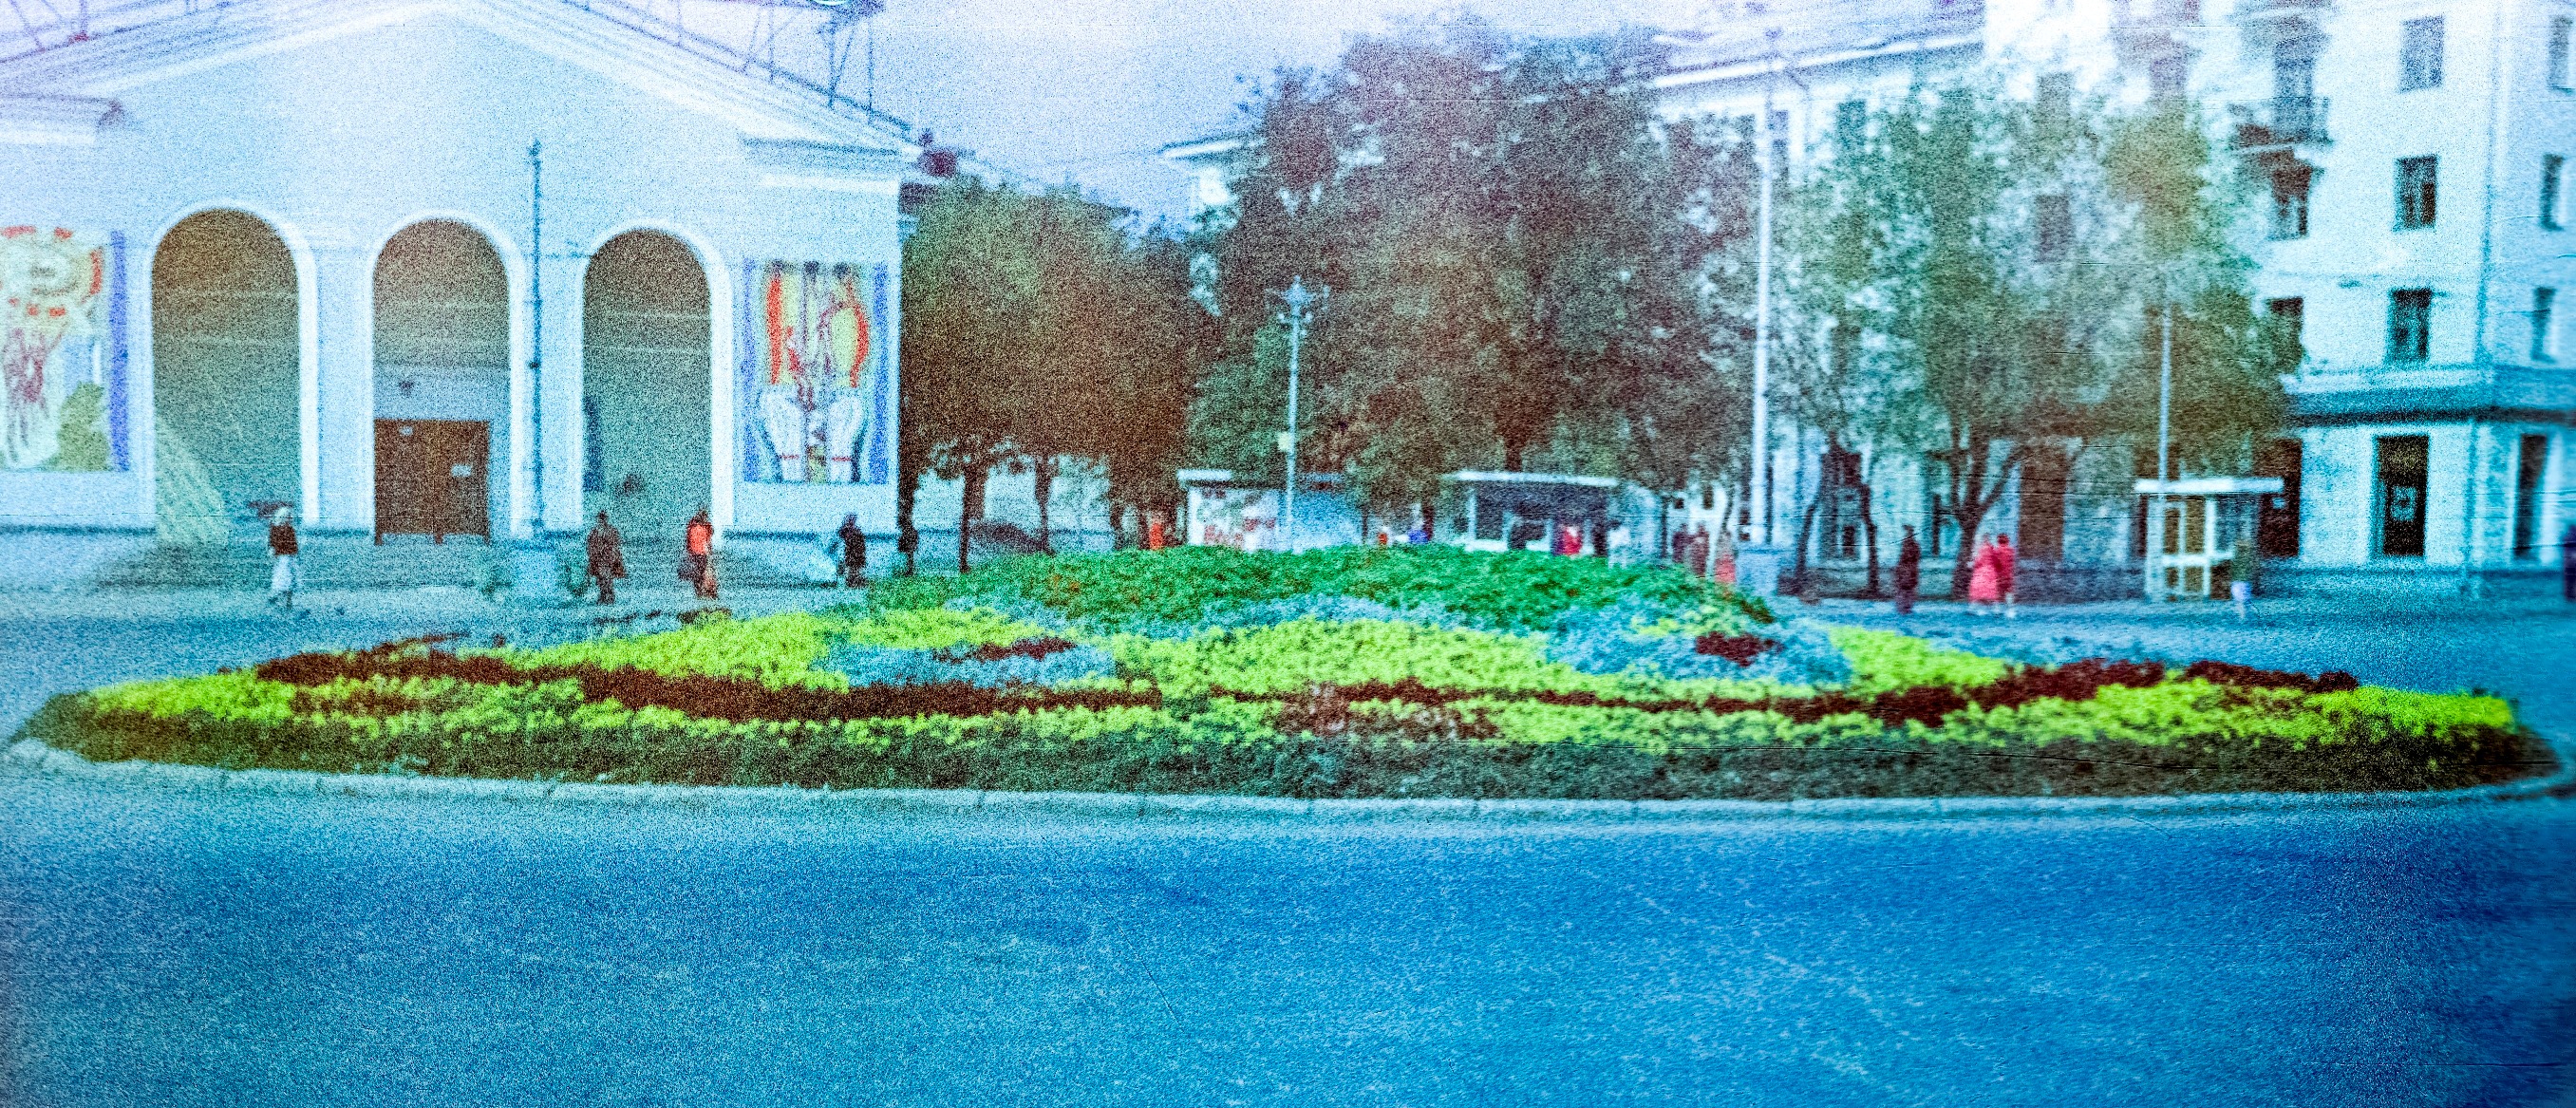 Площадь Мочалова